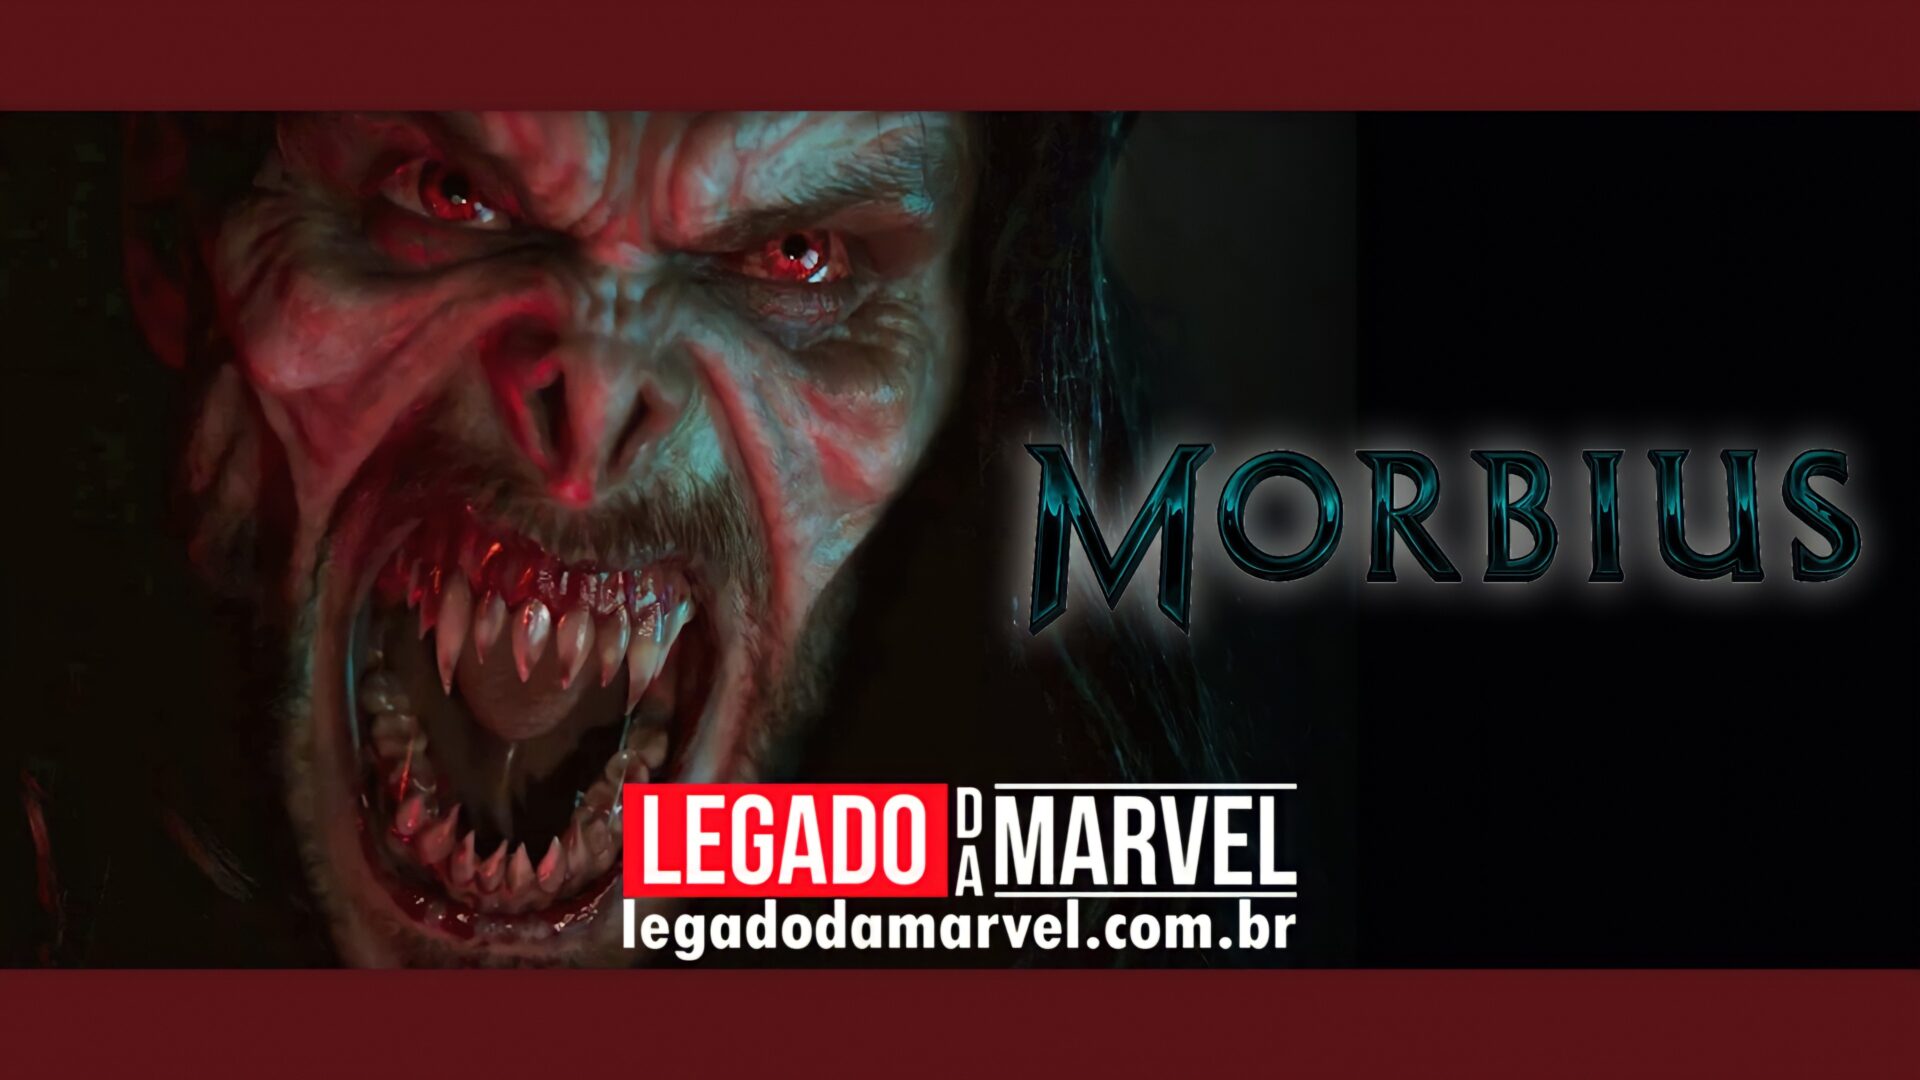 Saiu! Assista o trailer inédito de Morbius, novo derivado do Homem-Aranha